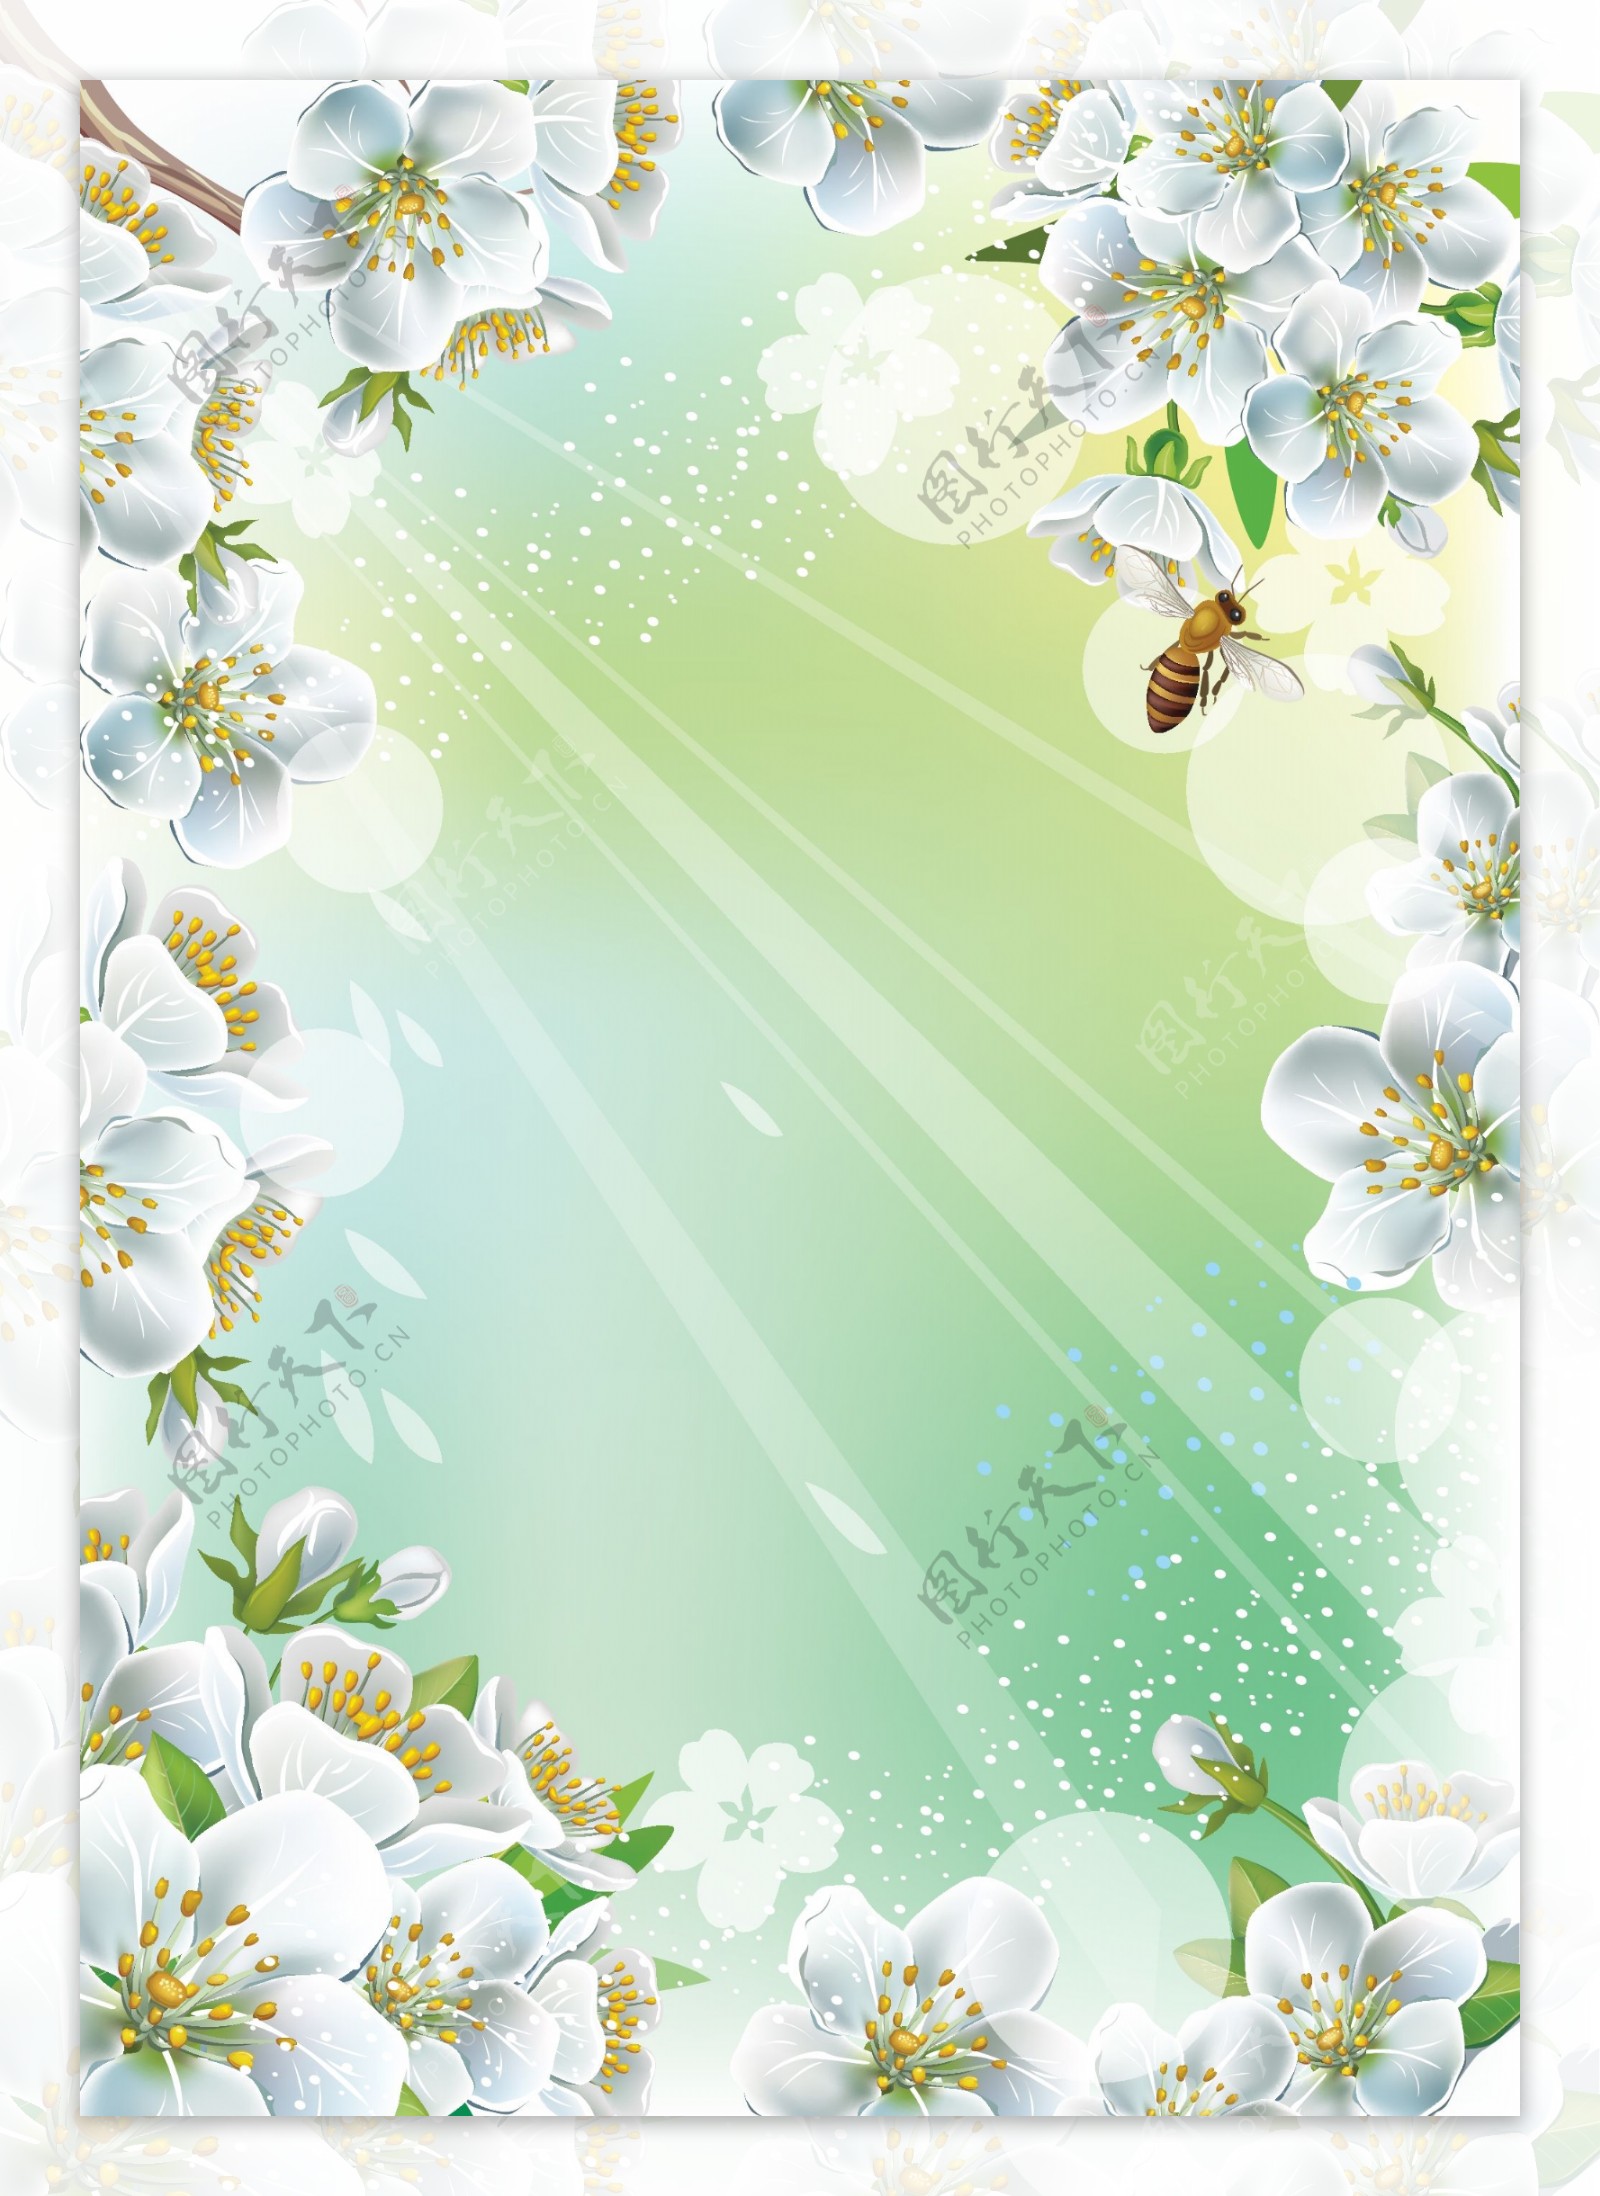 春天蜜蜂梨花背景图片